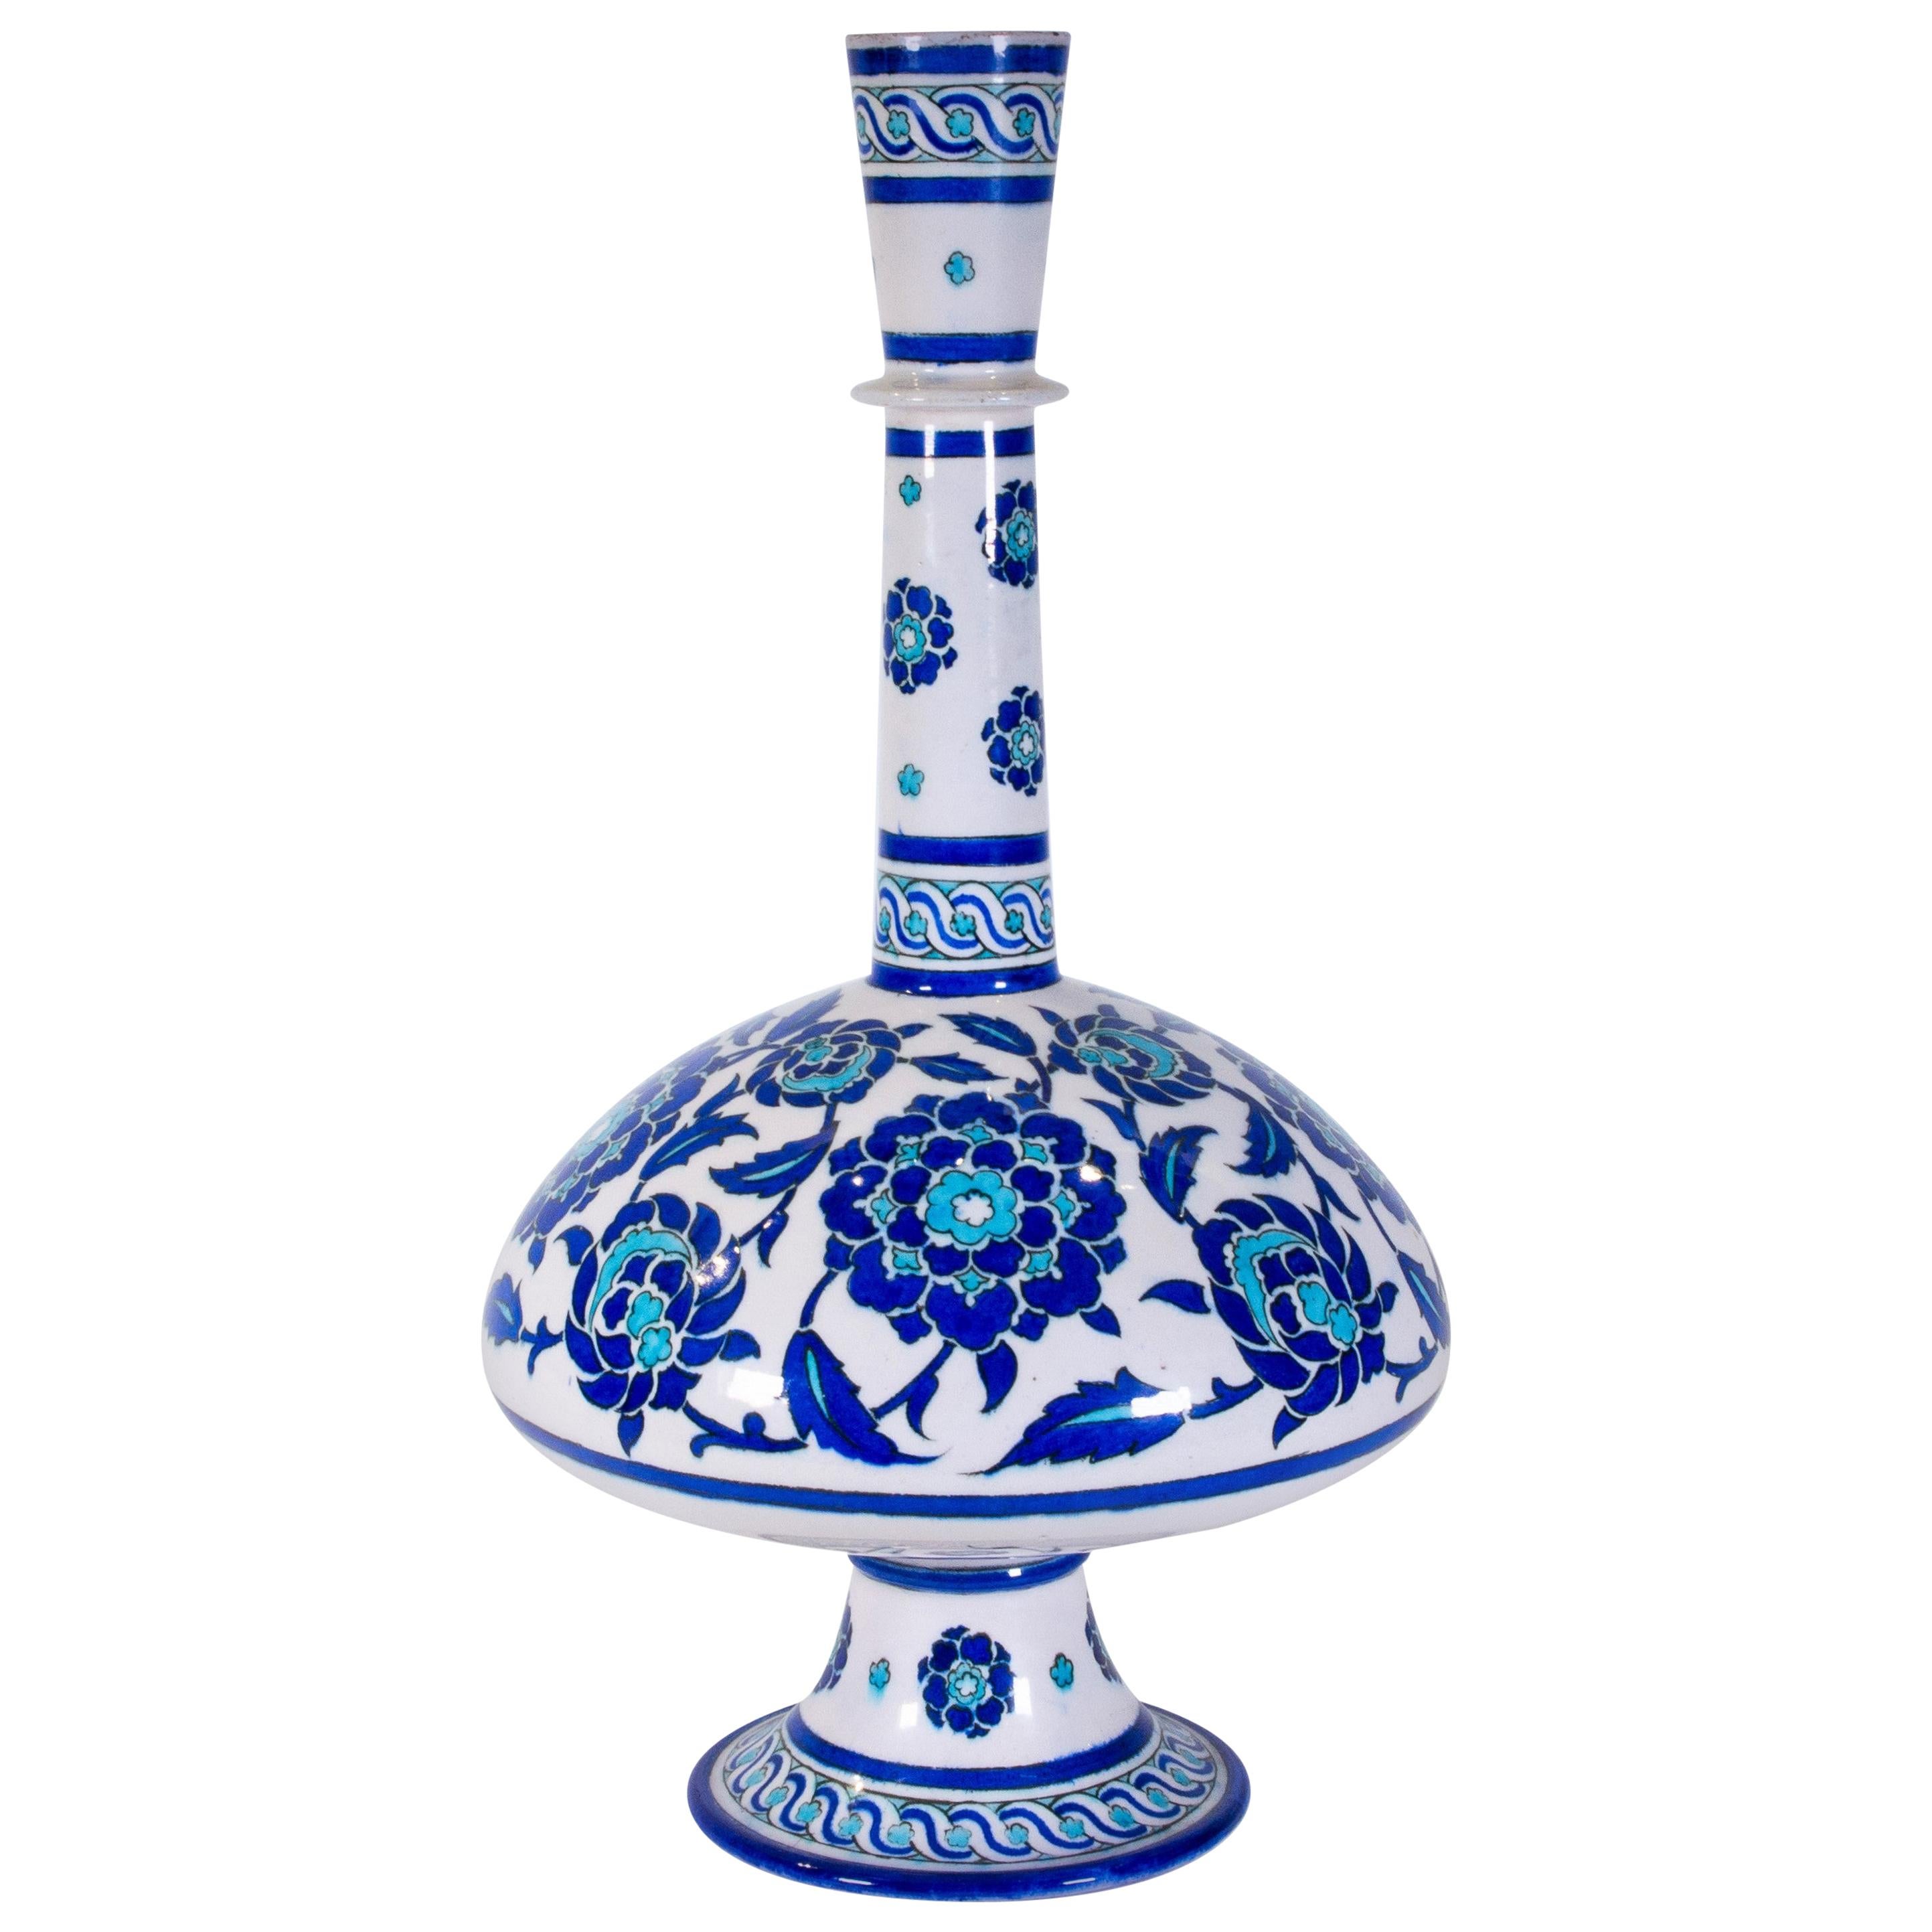 Grand vase en forme de bouteille en faïence de Theodore Deck dans le goût islamique/Iznik